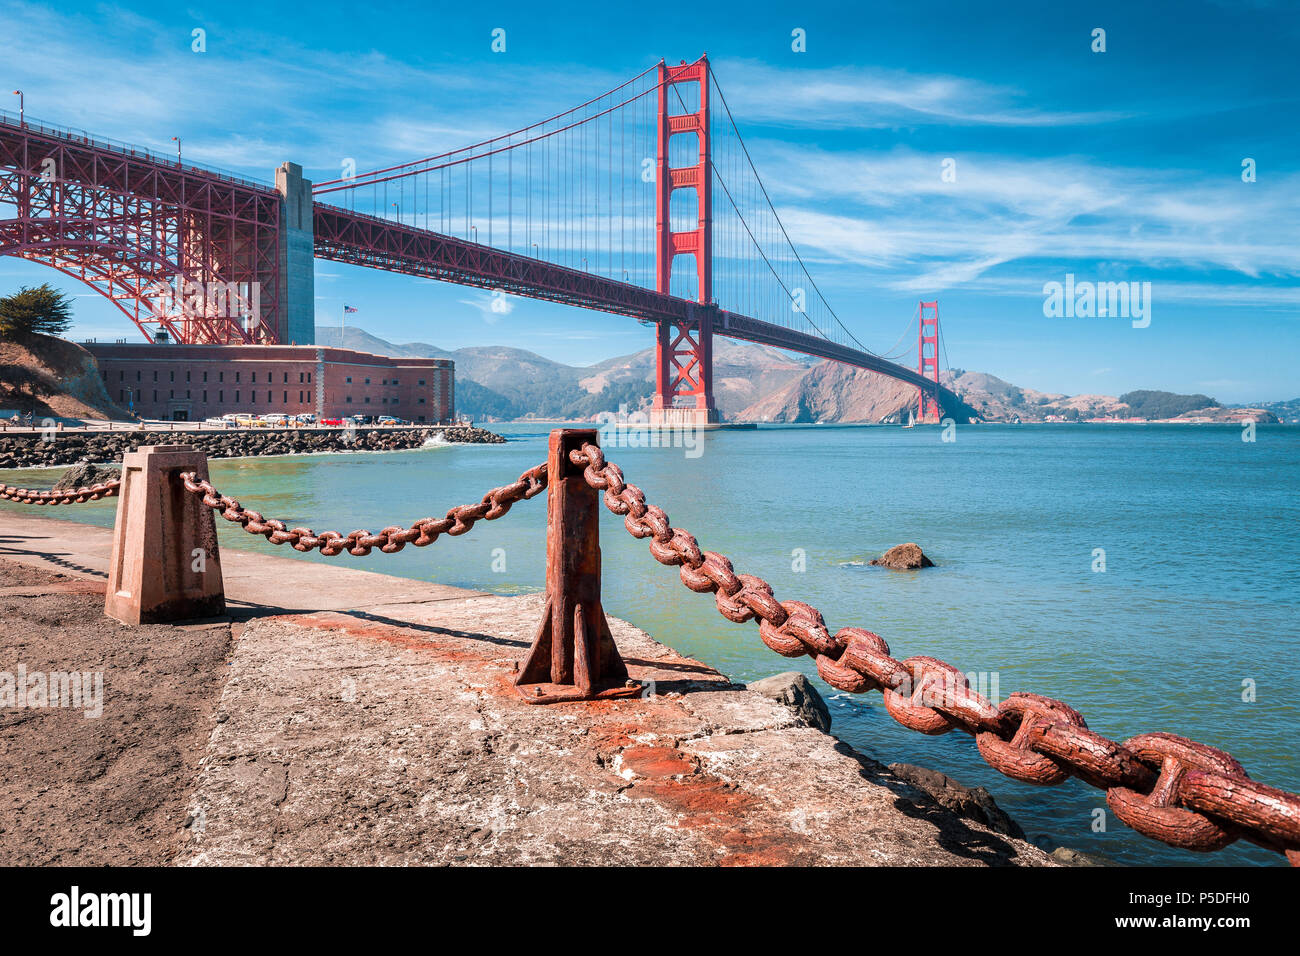 Visualizzazione classica del famoso Golden Gate Bridge con il Fort Point National Historic Site in una bella giornata di sole con cielo blu e nuvole, San Francisco, Stati Uniti d'America Foto Stock